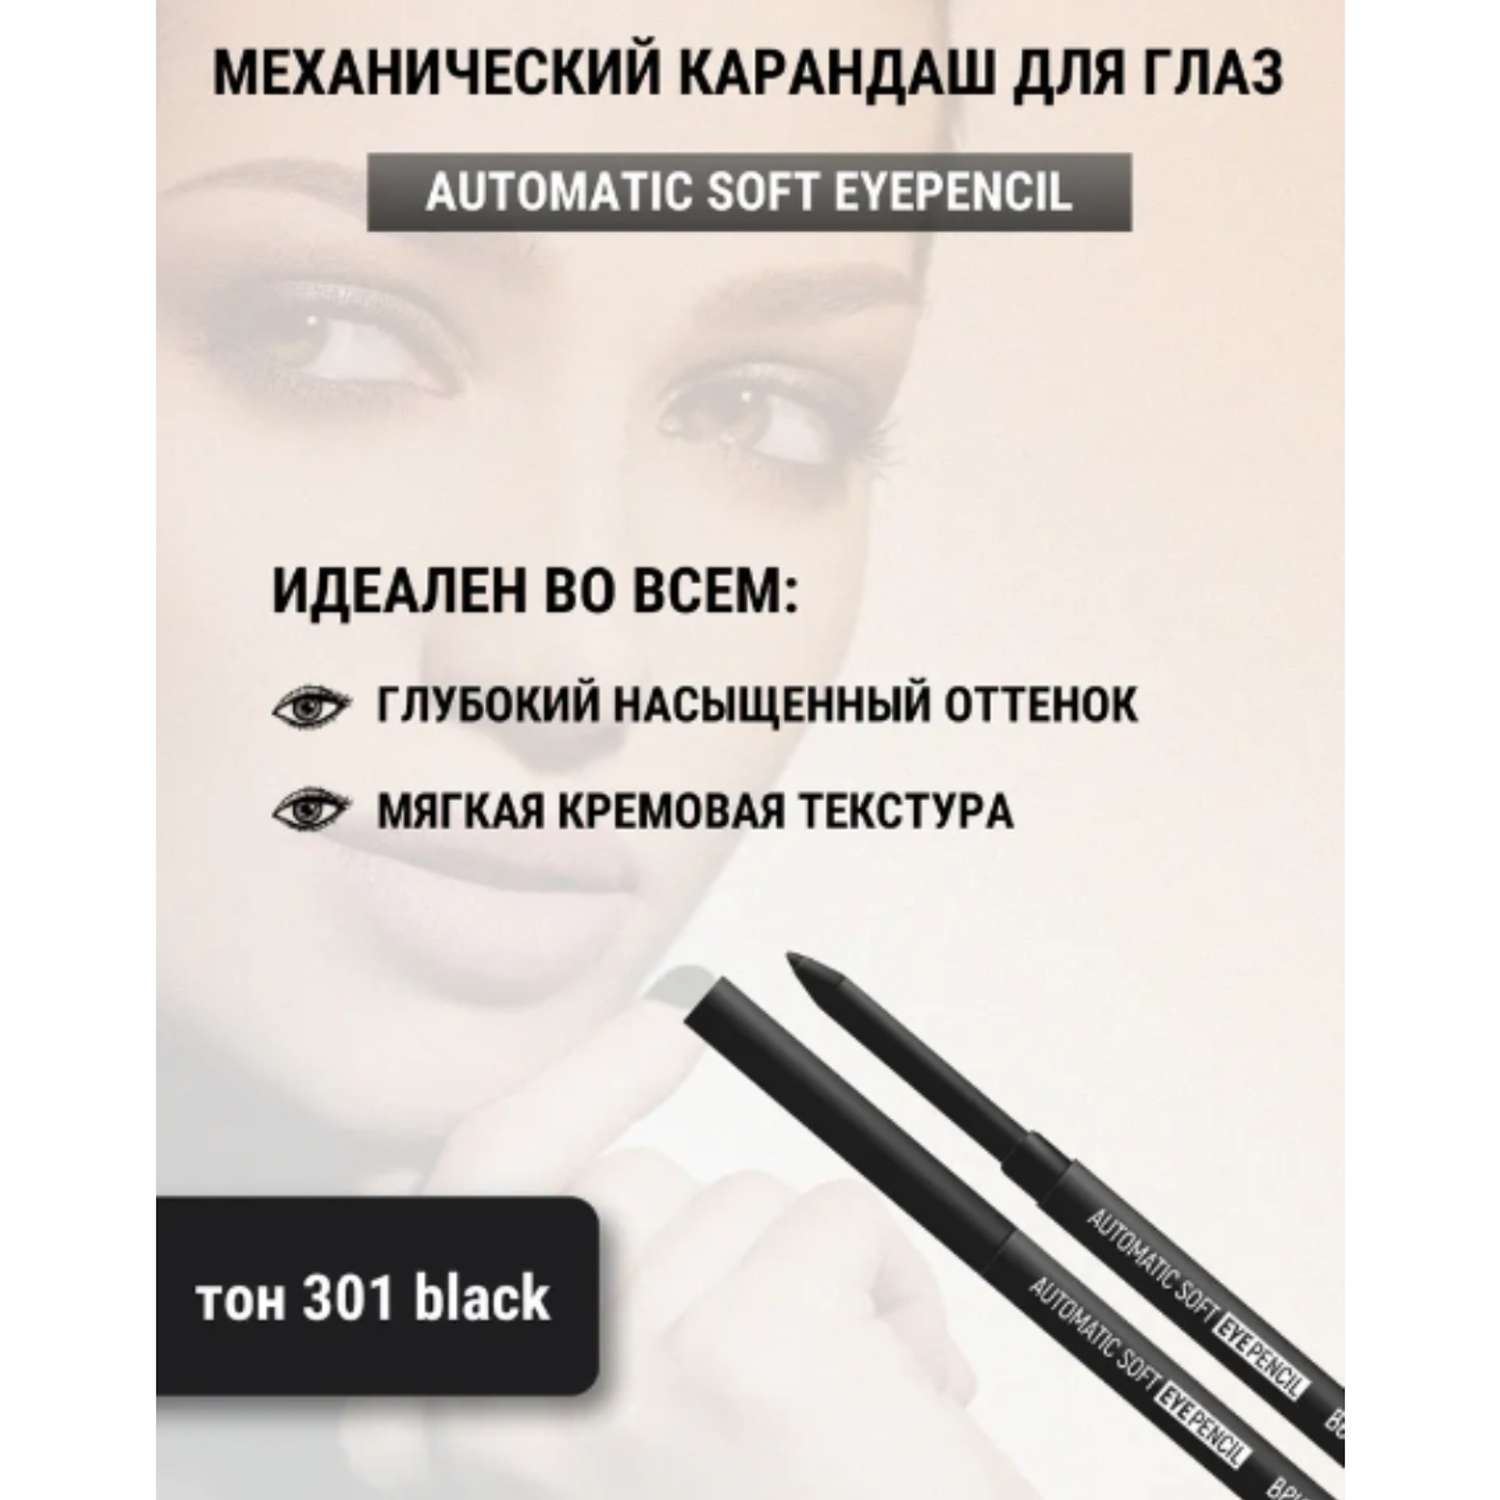 Карандаш для глаз Belor Design механический automatic soft eyepencil тон301 black - фото 4